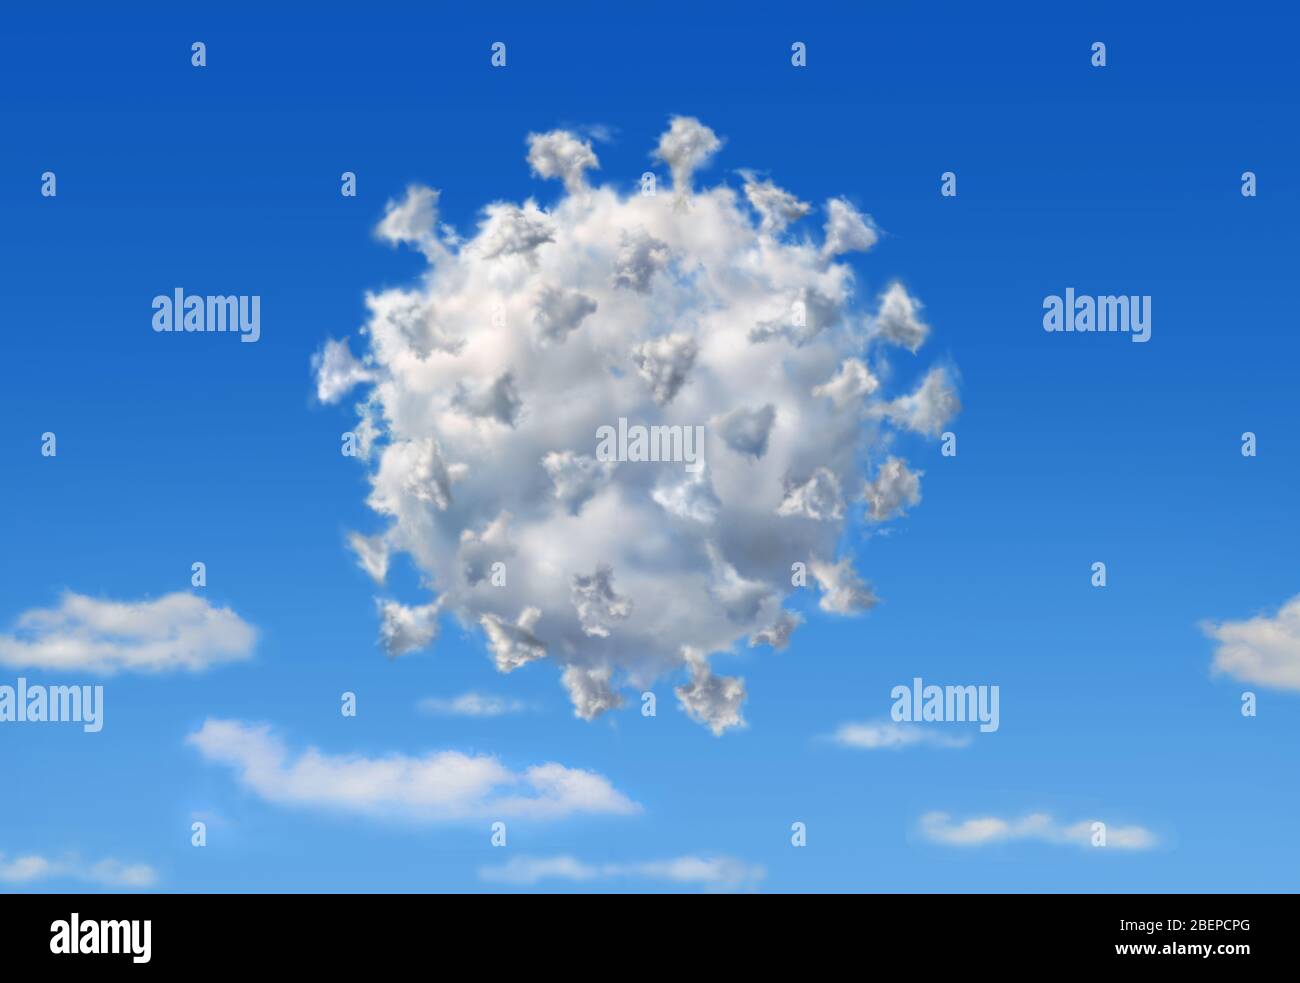 Nuvola soffice a forma di Coronavirus Covid19, su cielo blu con altre nuvole inferiori. Illustrazione del concetto. Foto Stock